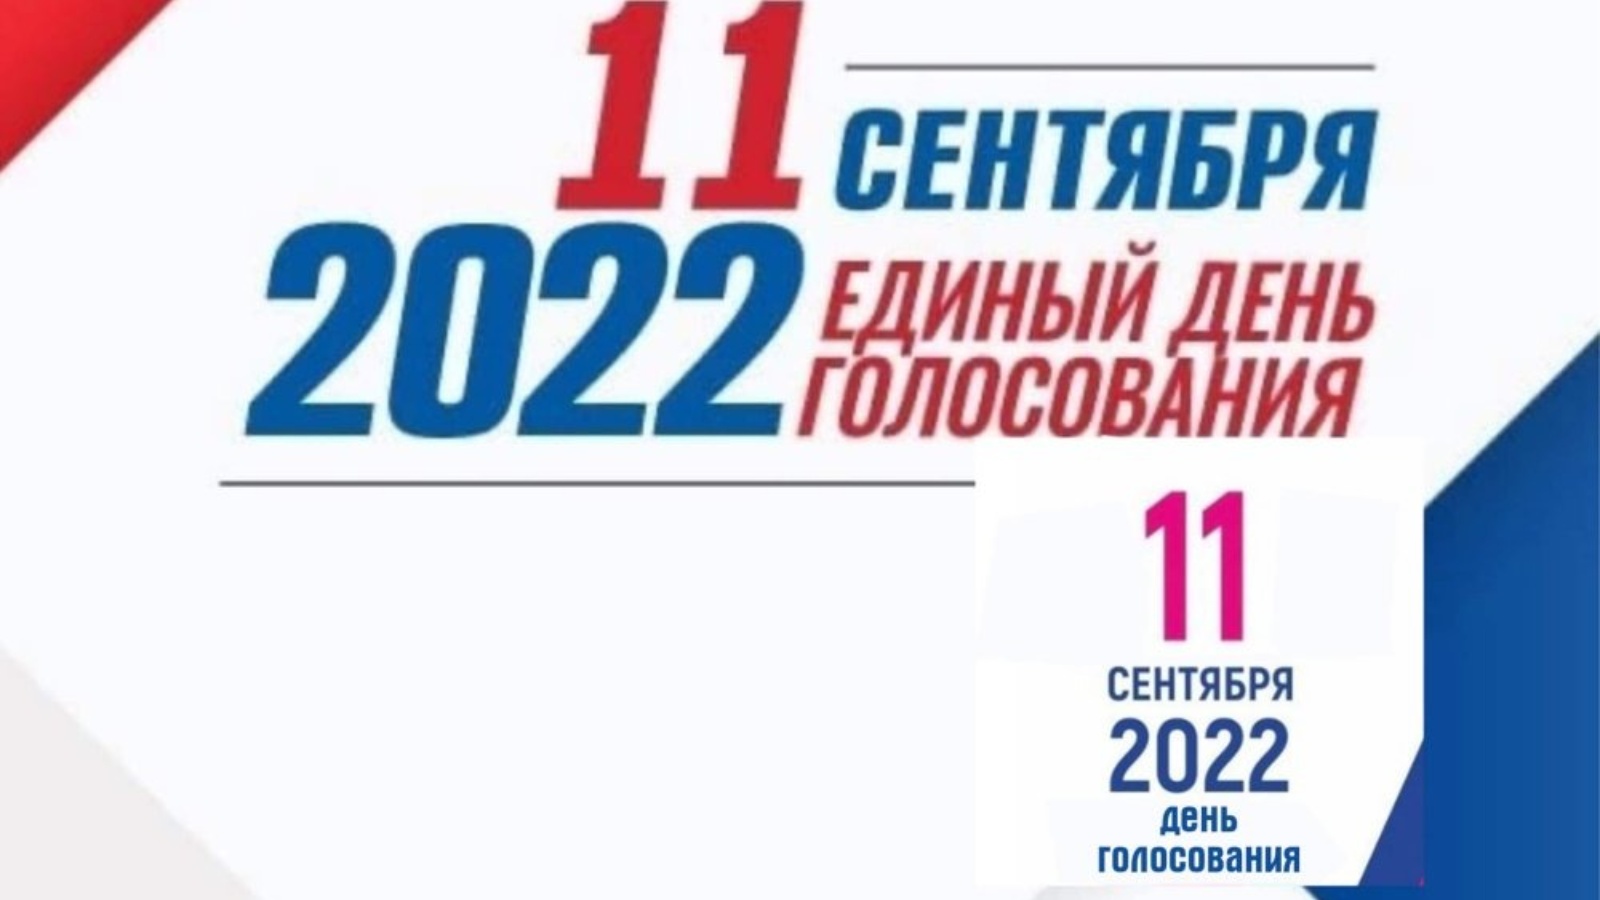 Выборы 1 2 3 сентября. День голосования. Выборы в сентябре 2022. Единый день выборов в России. Предвыборный логотип.